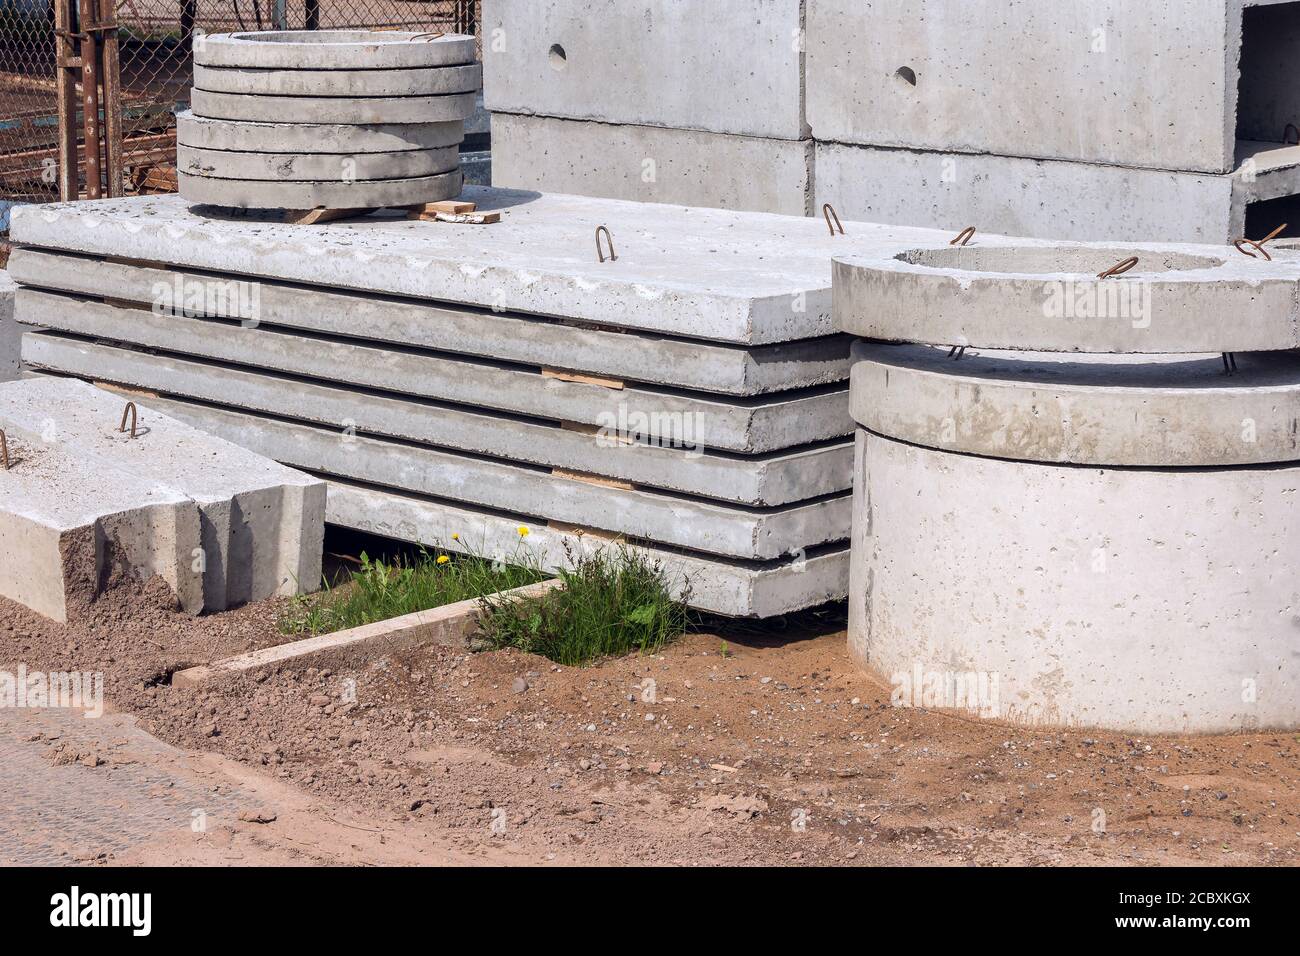 Lastre e anelli in cemento armato per l'impianto fognario in cantiere. Produzione industriale di prodotti cementizi. Foto Stock